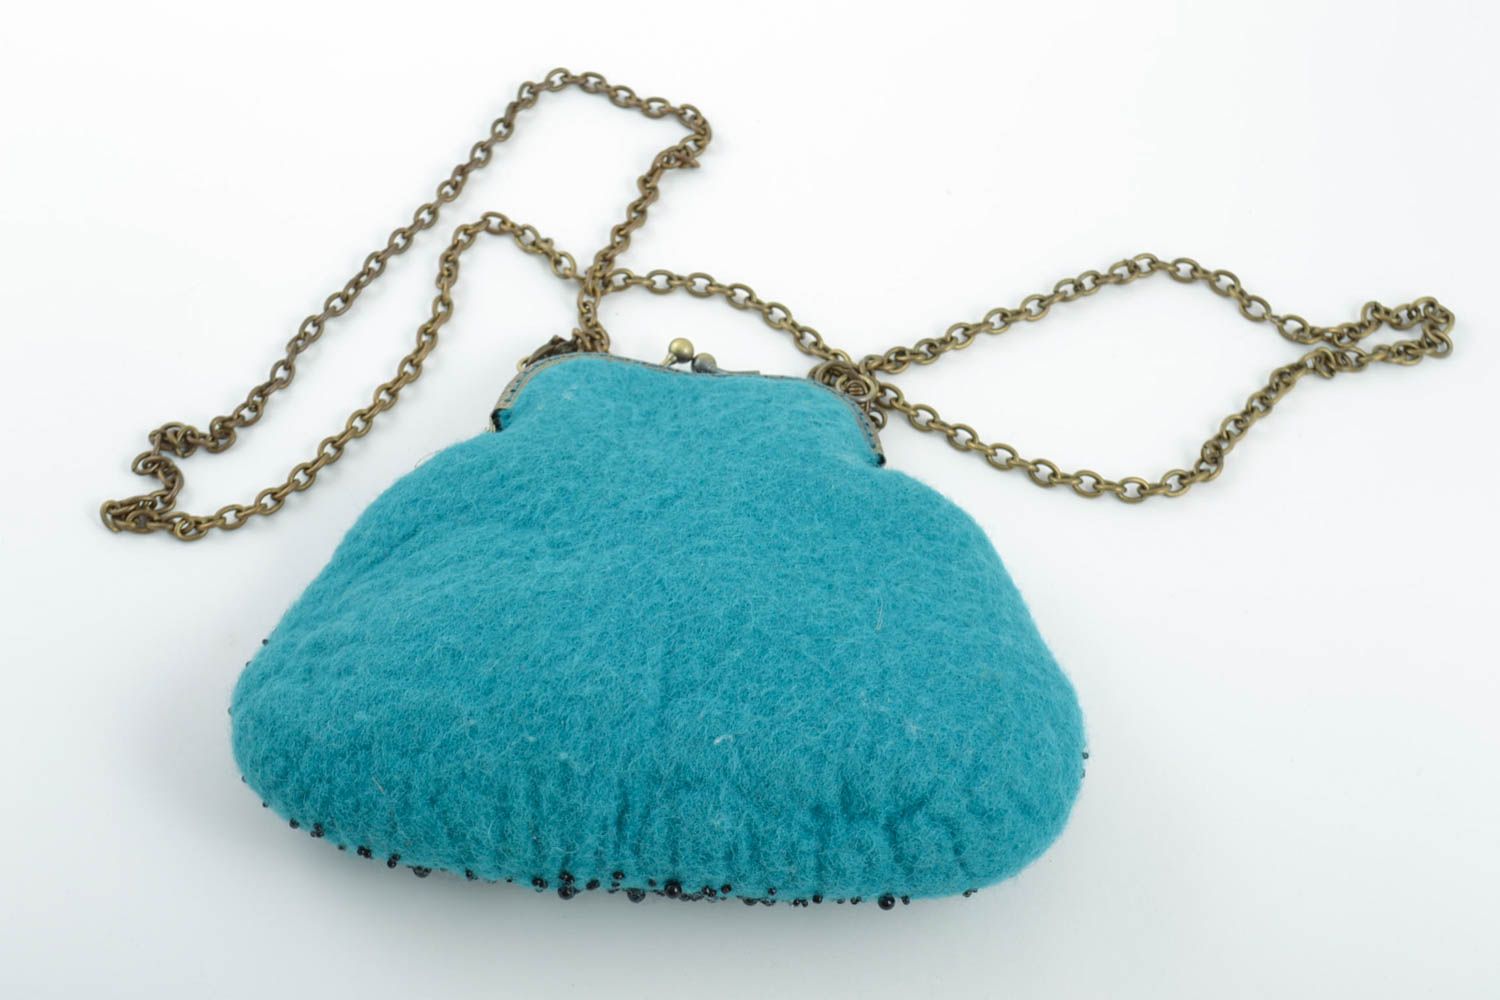 Голубая сумочка в технике валяния из шерсти ручной работы расшитая бисером фото 2